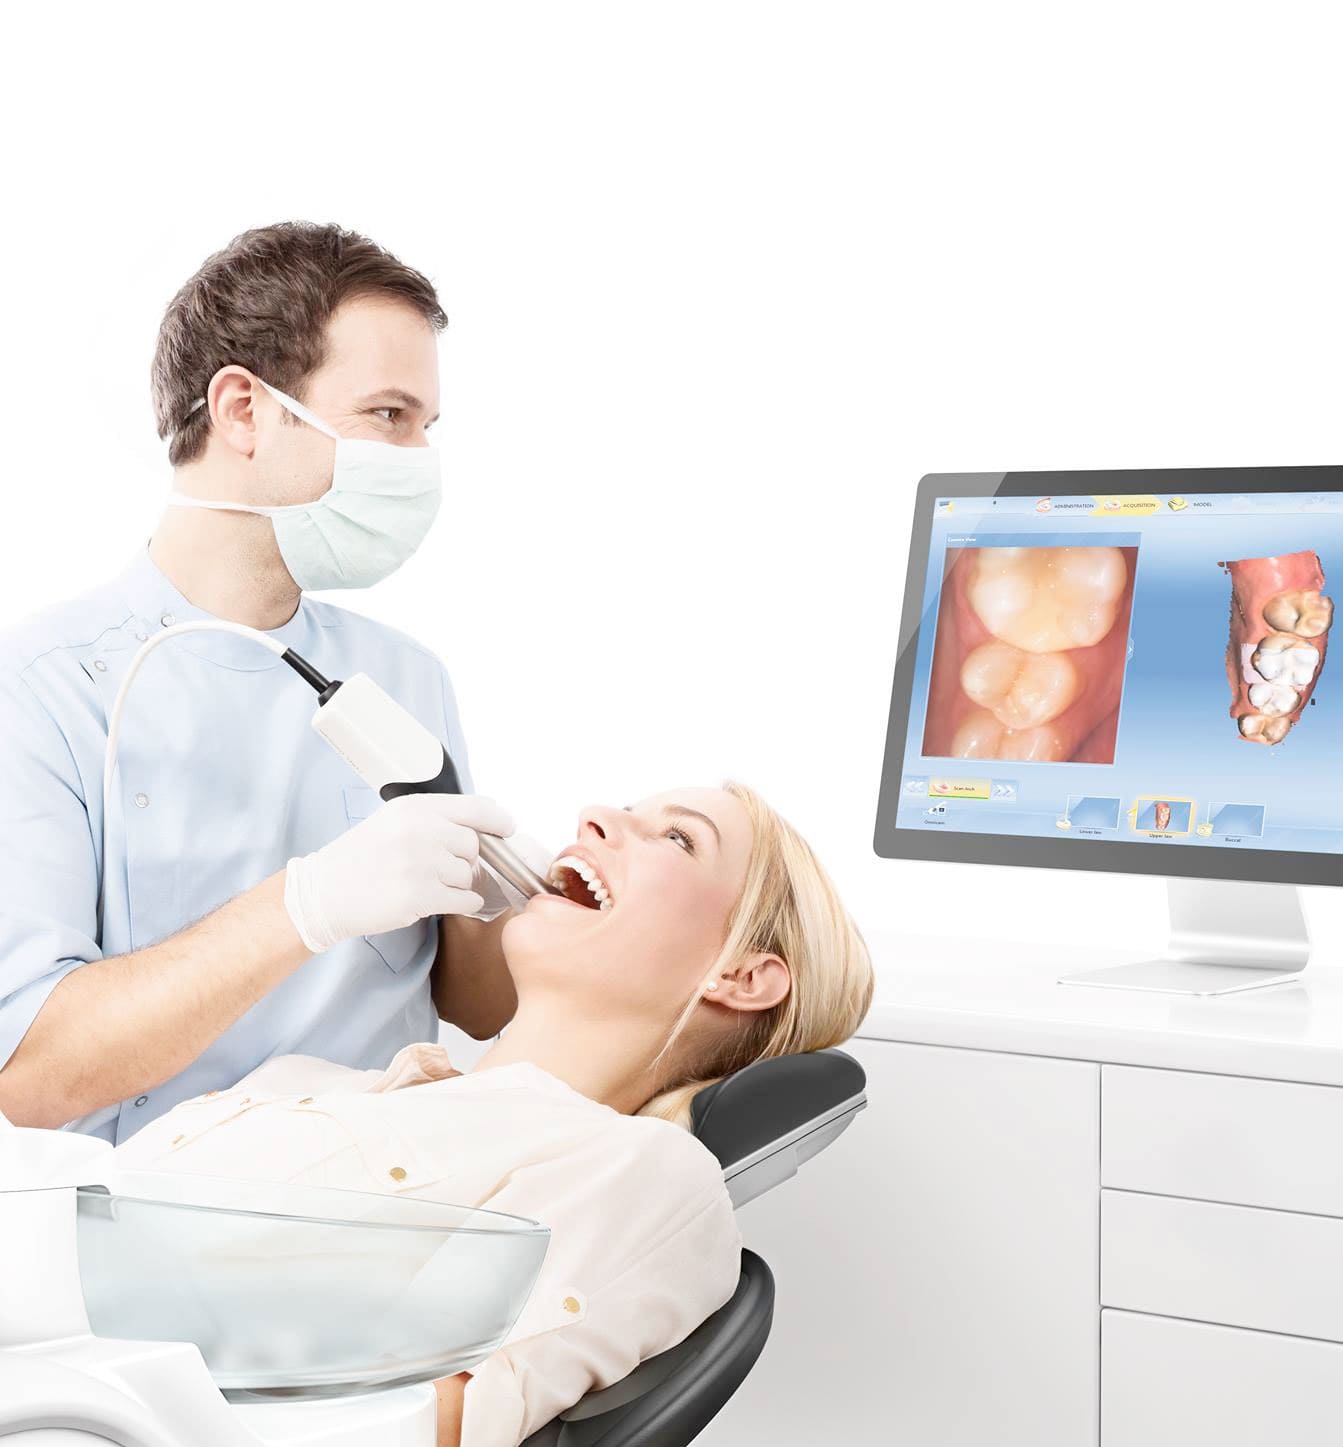 تصویربرداری تشخیصی دندان با سونوگرافی بدون درد، مقرون به صرفه، غیر تهاجمی است و عوارض جانبی شناخته شده ای ندارد.